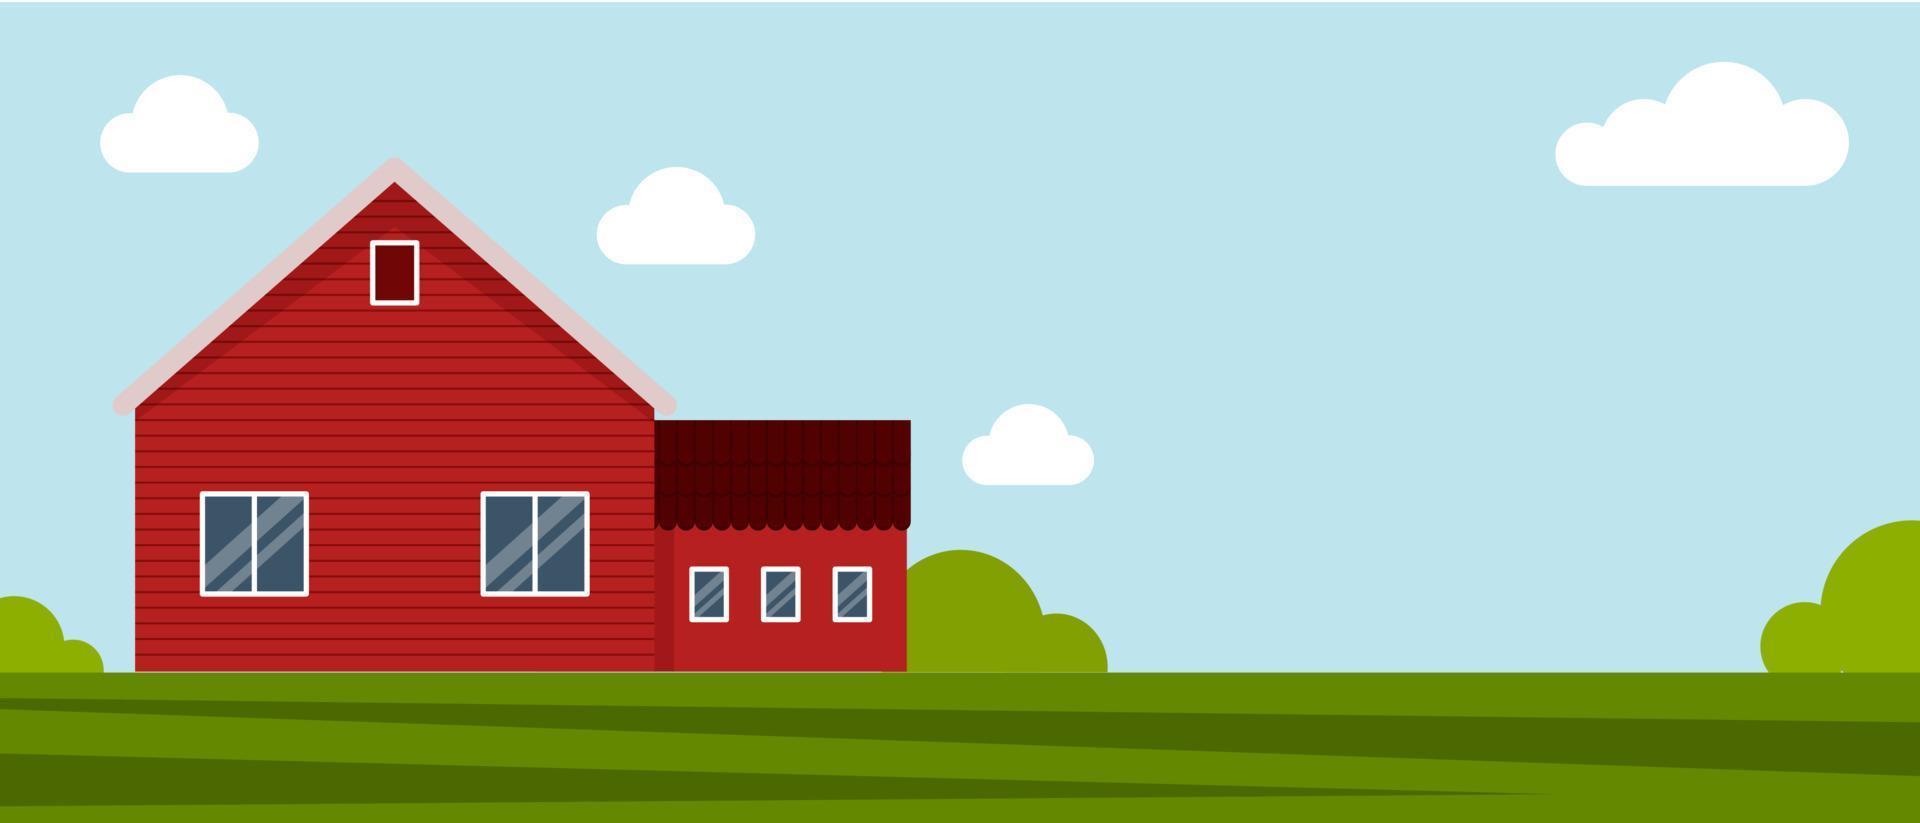 Landhaus auf einer grünen Wiese, landwirtschaftlicher Bau. flache vektorillustration auf einem hintergrund des blauen himmels mit wolken. karikatur ländliches landschaftspanoramafeld. banner für website vektor